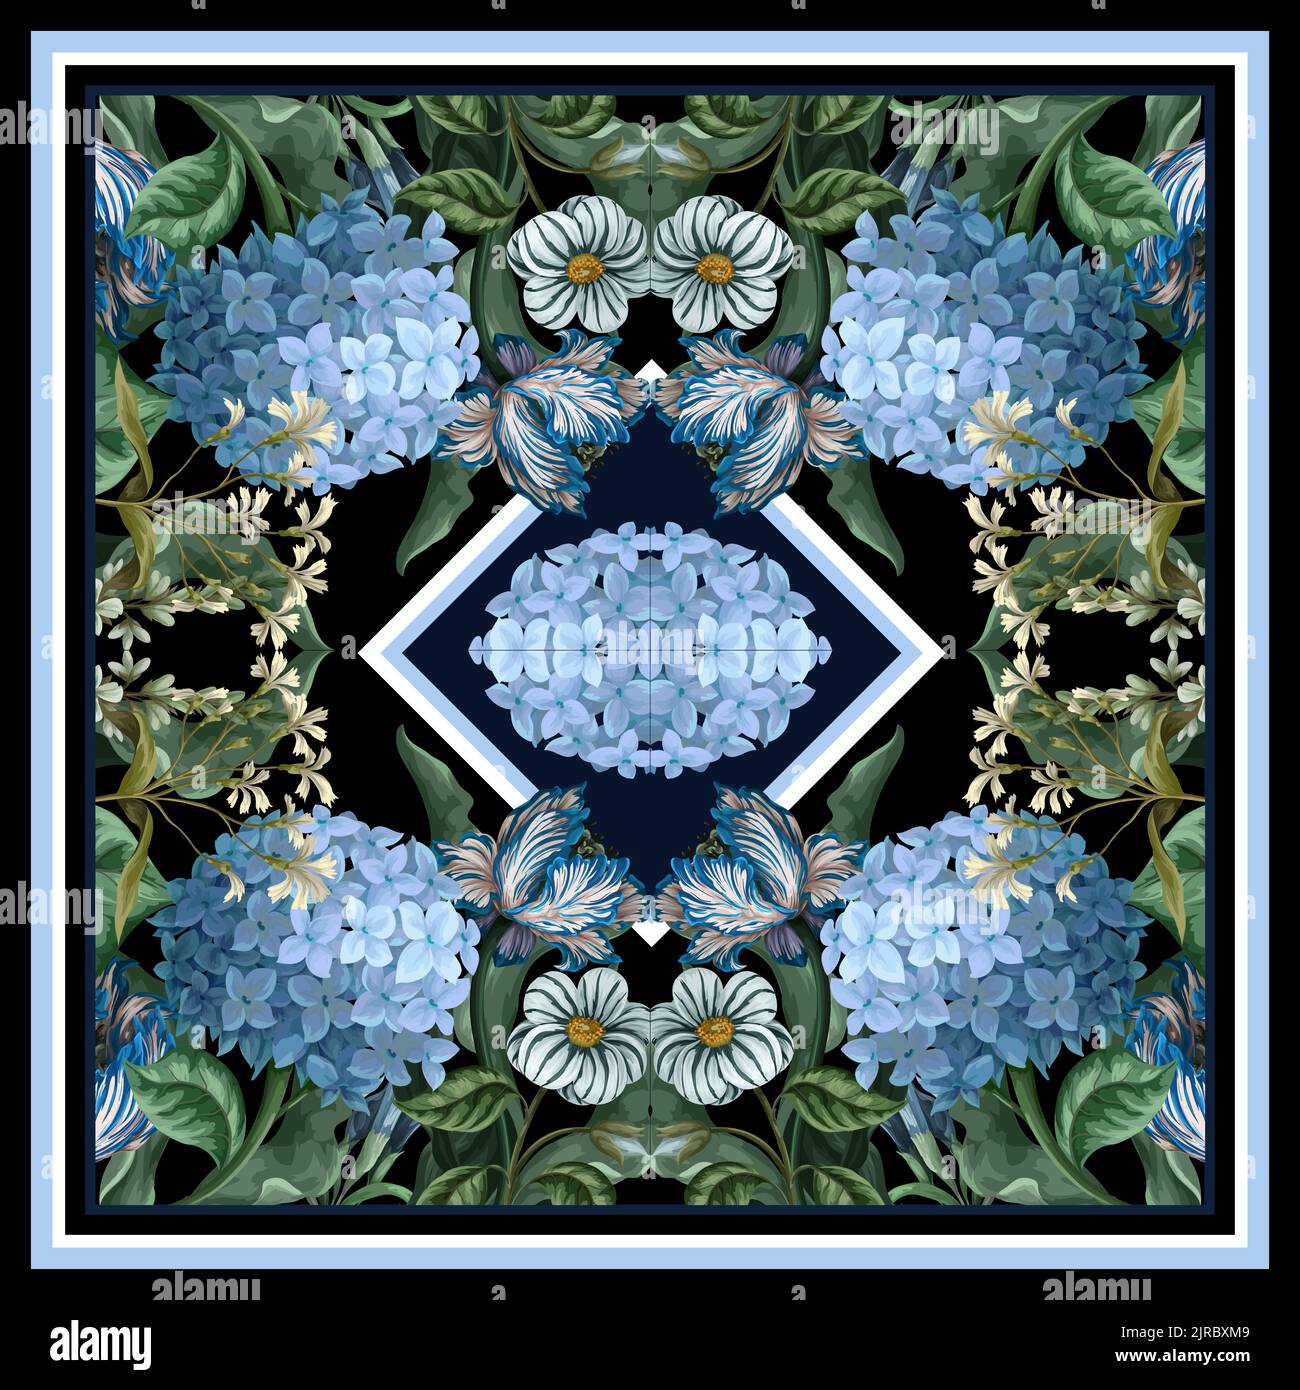 Foulard à motifs avec hortensias bleus et autres fleurs. Vecteur. Illustration de Vecteur